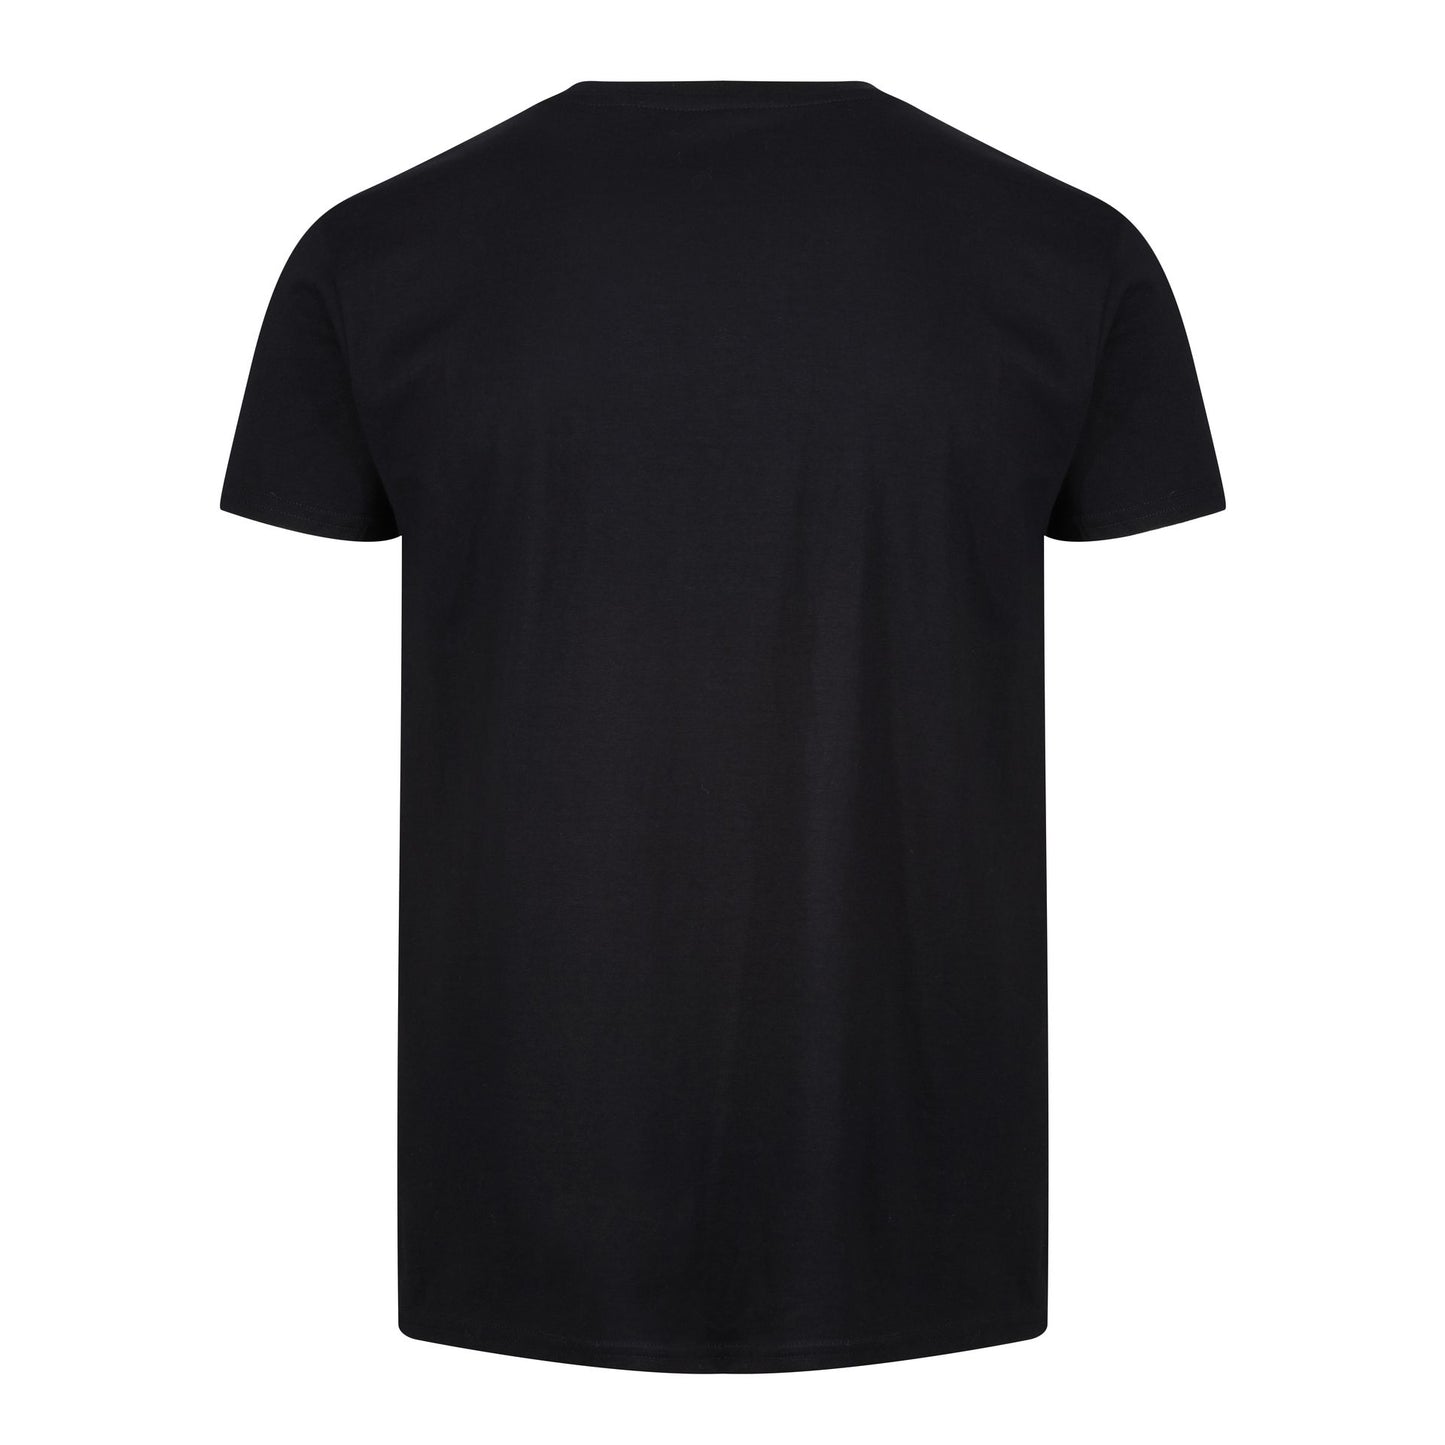 MFC Large Crest Blackout T-Shirt